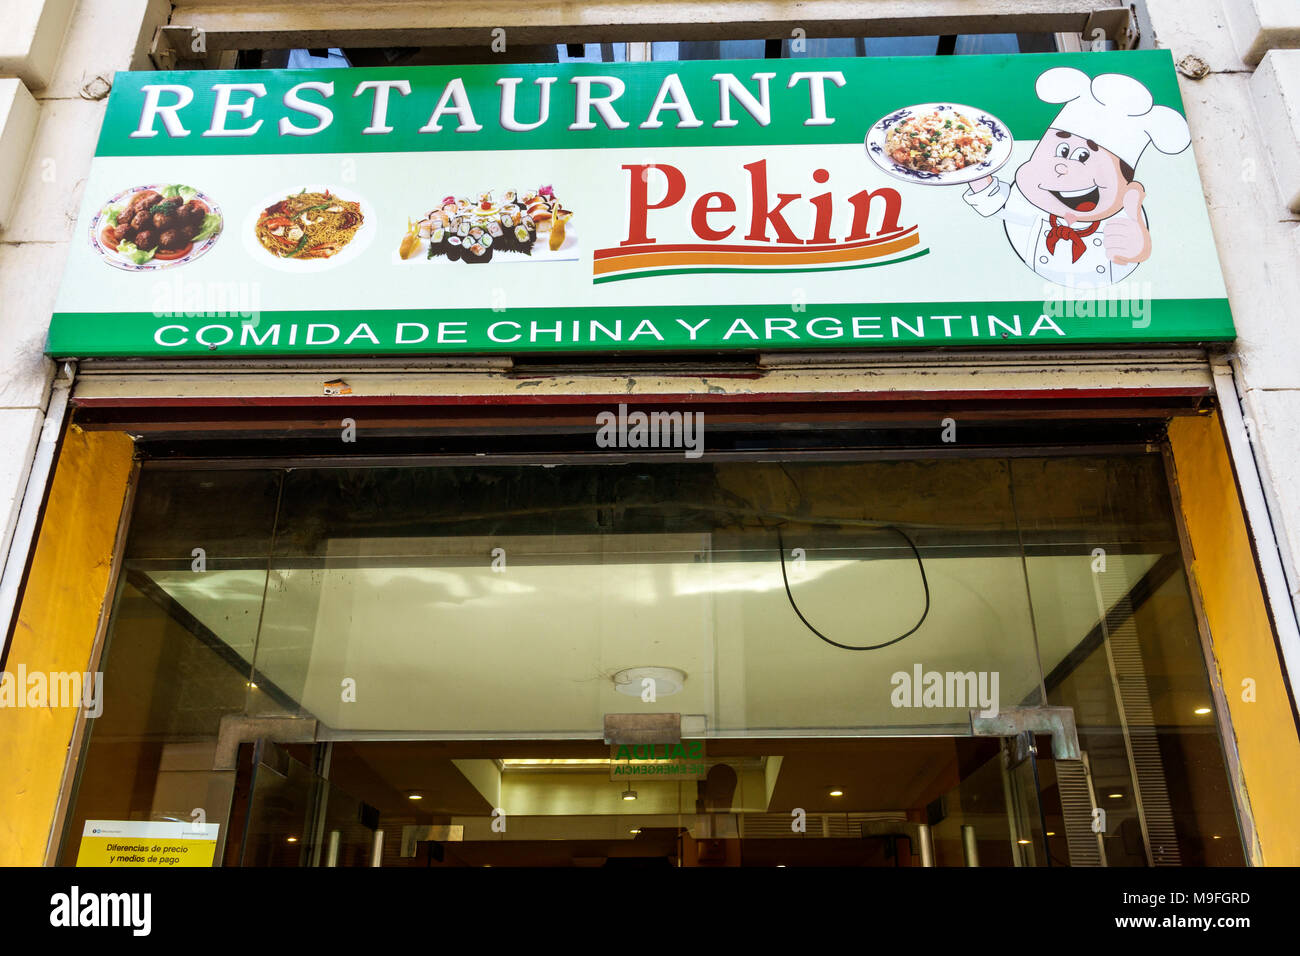 Buenos Aires Argentina, Microcentro, Ristorante Pekin Comida de China, ristorante ristoranti ristorazione ristoranti mangiare caffè bistrot, cibo asiatico, buffet, Foto Stock